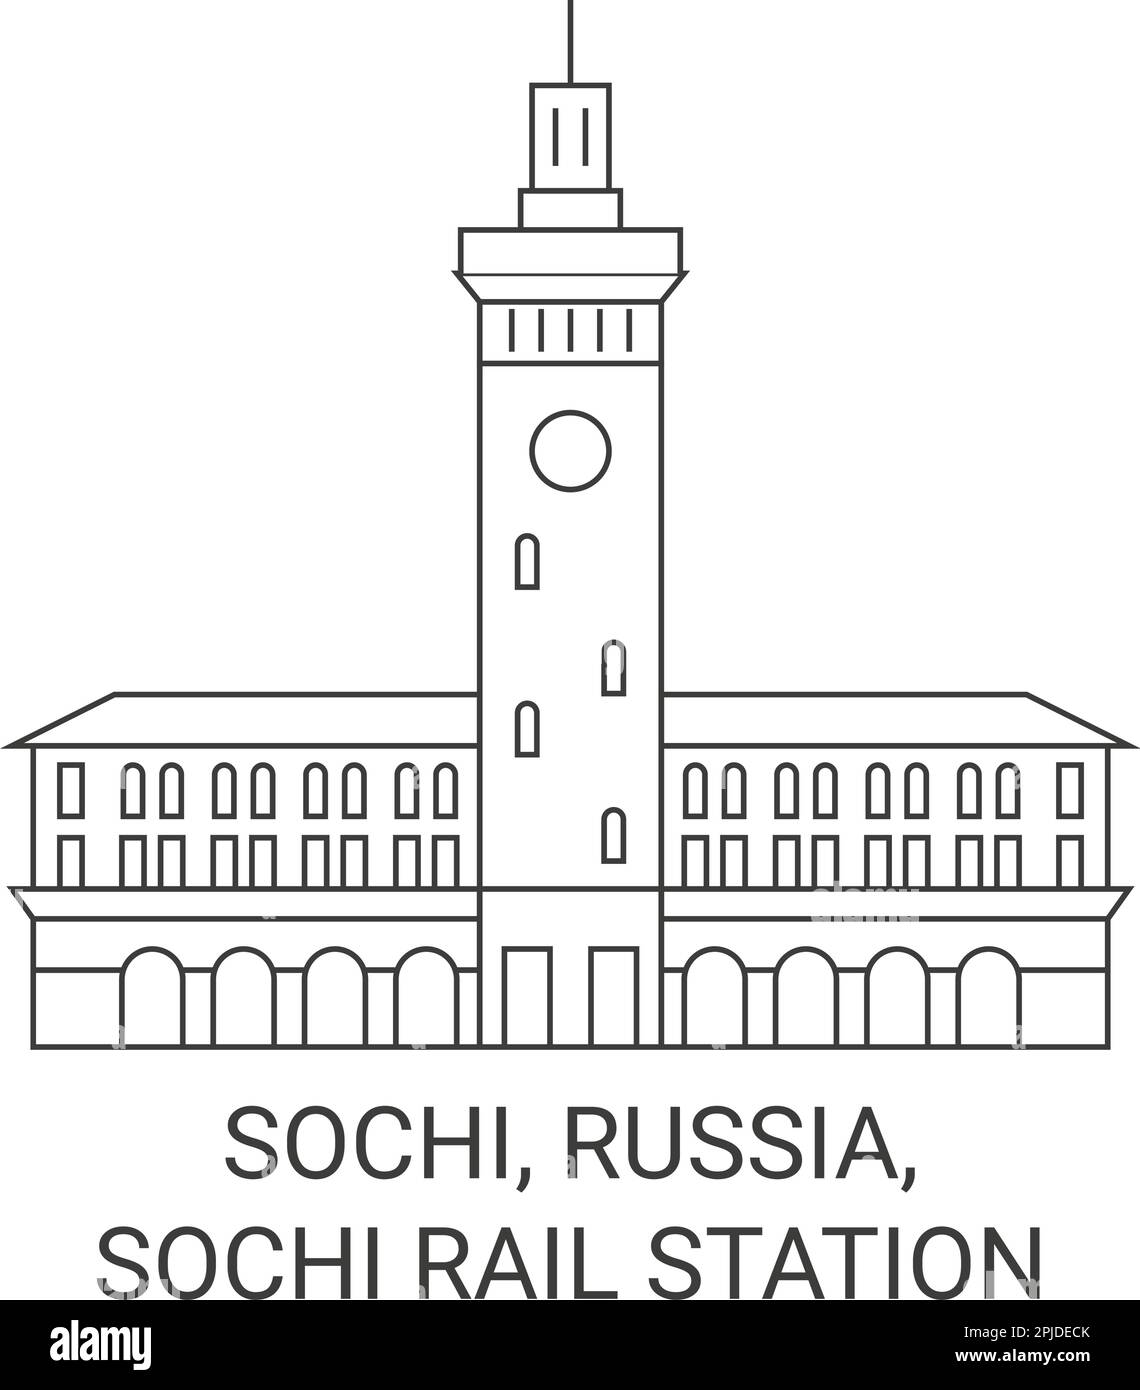 Russia, Sochi, Sochi Rail Station travel landmark vector illustration Stock Vector